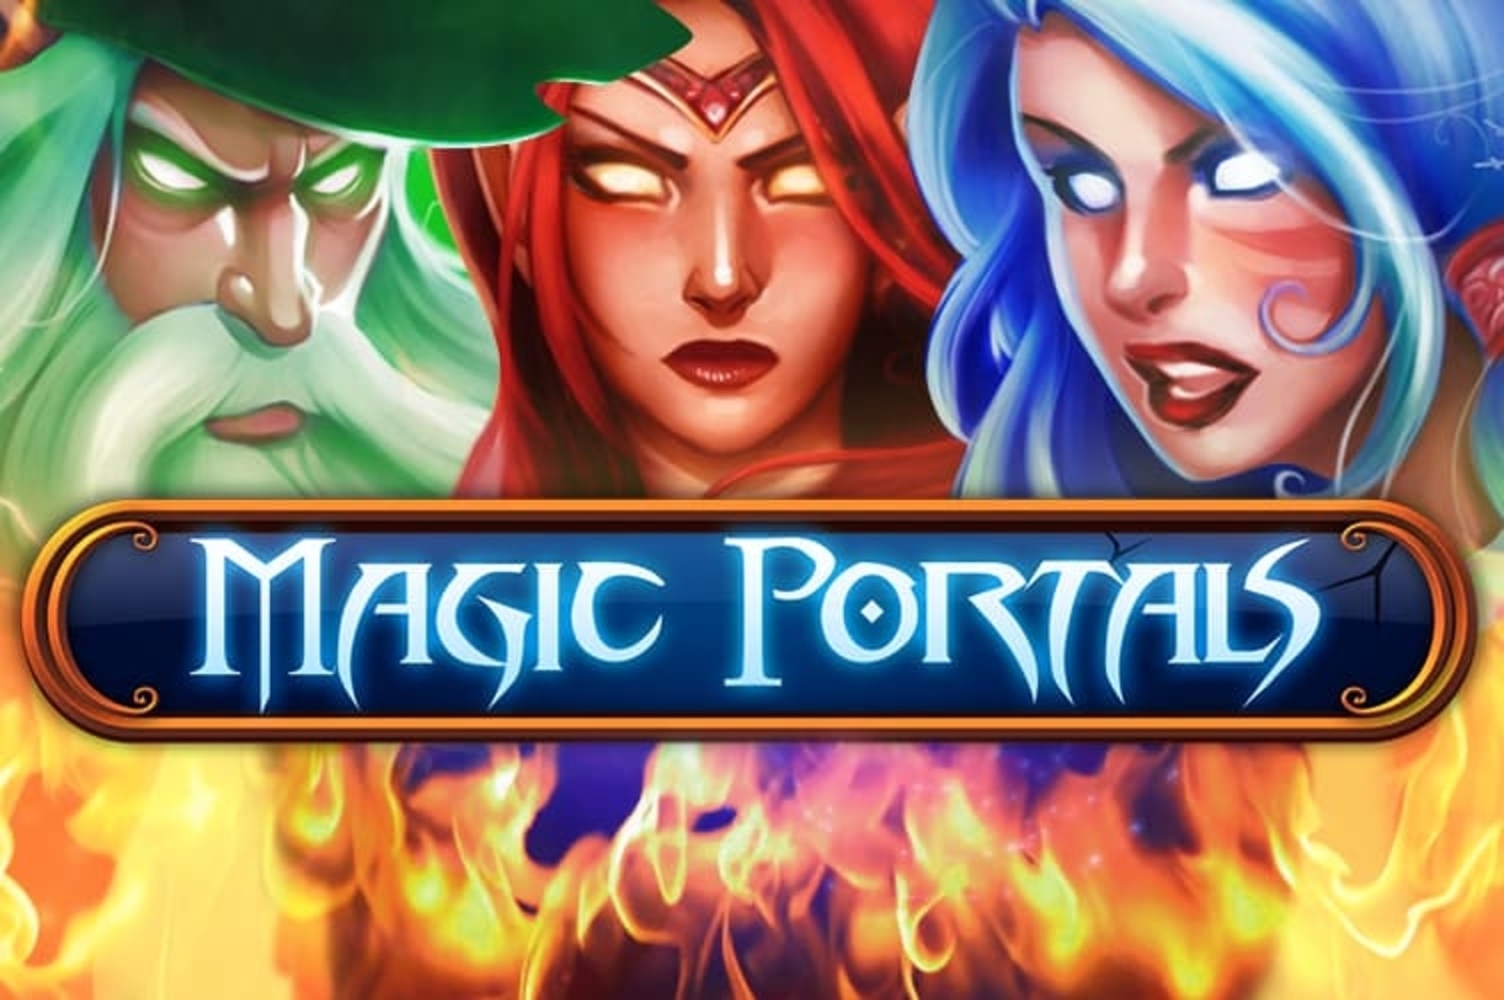 Magic Portals demo